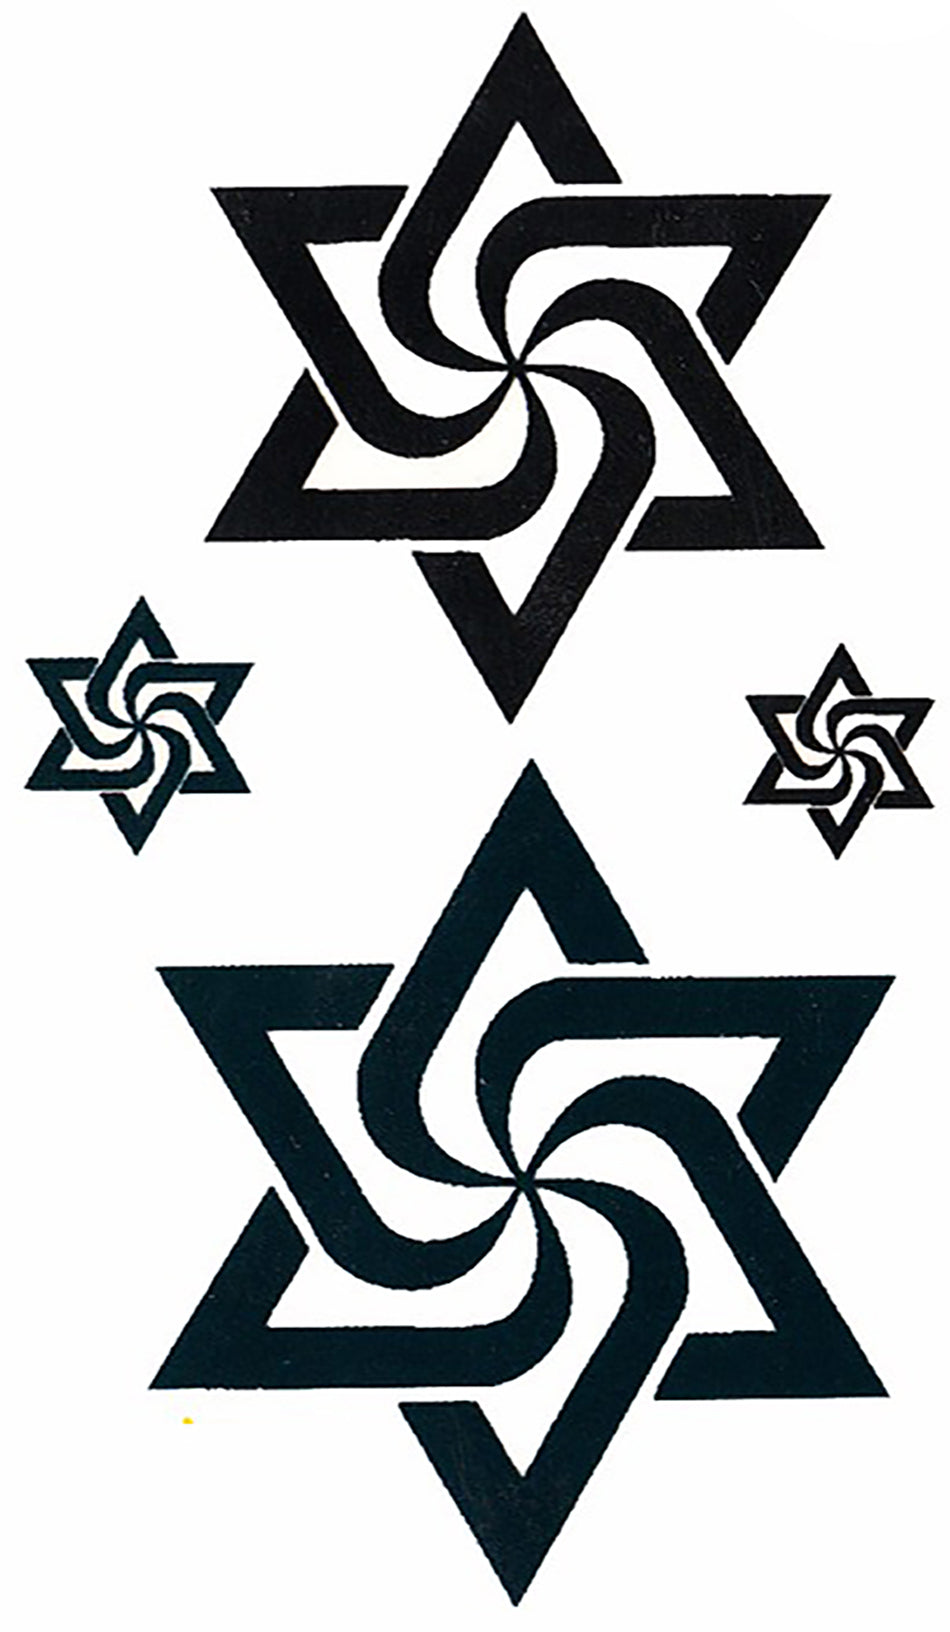 Raelian Star Symbol for Belief in Alien Angels Raelism Dark Teal and Black Waterproof Temporary Tattoos 2 Sheets